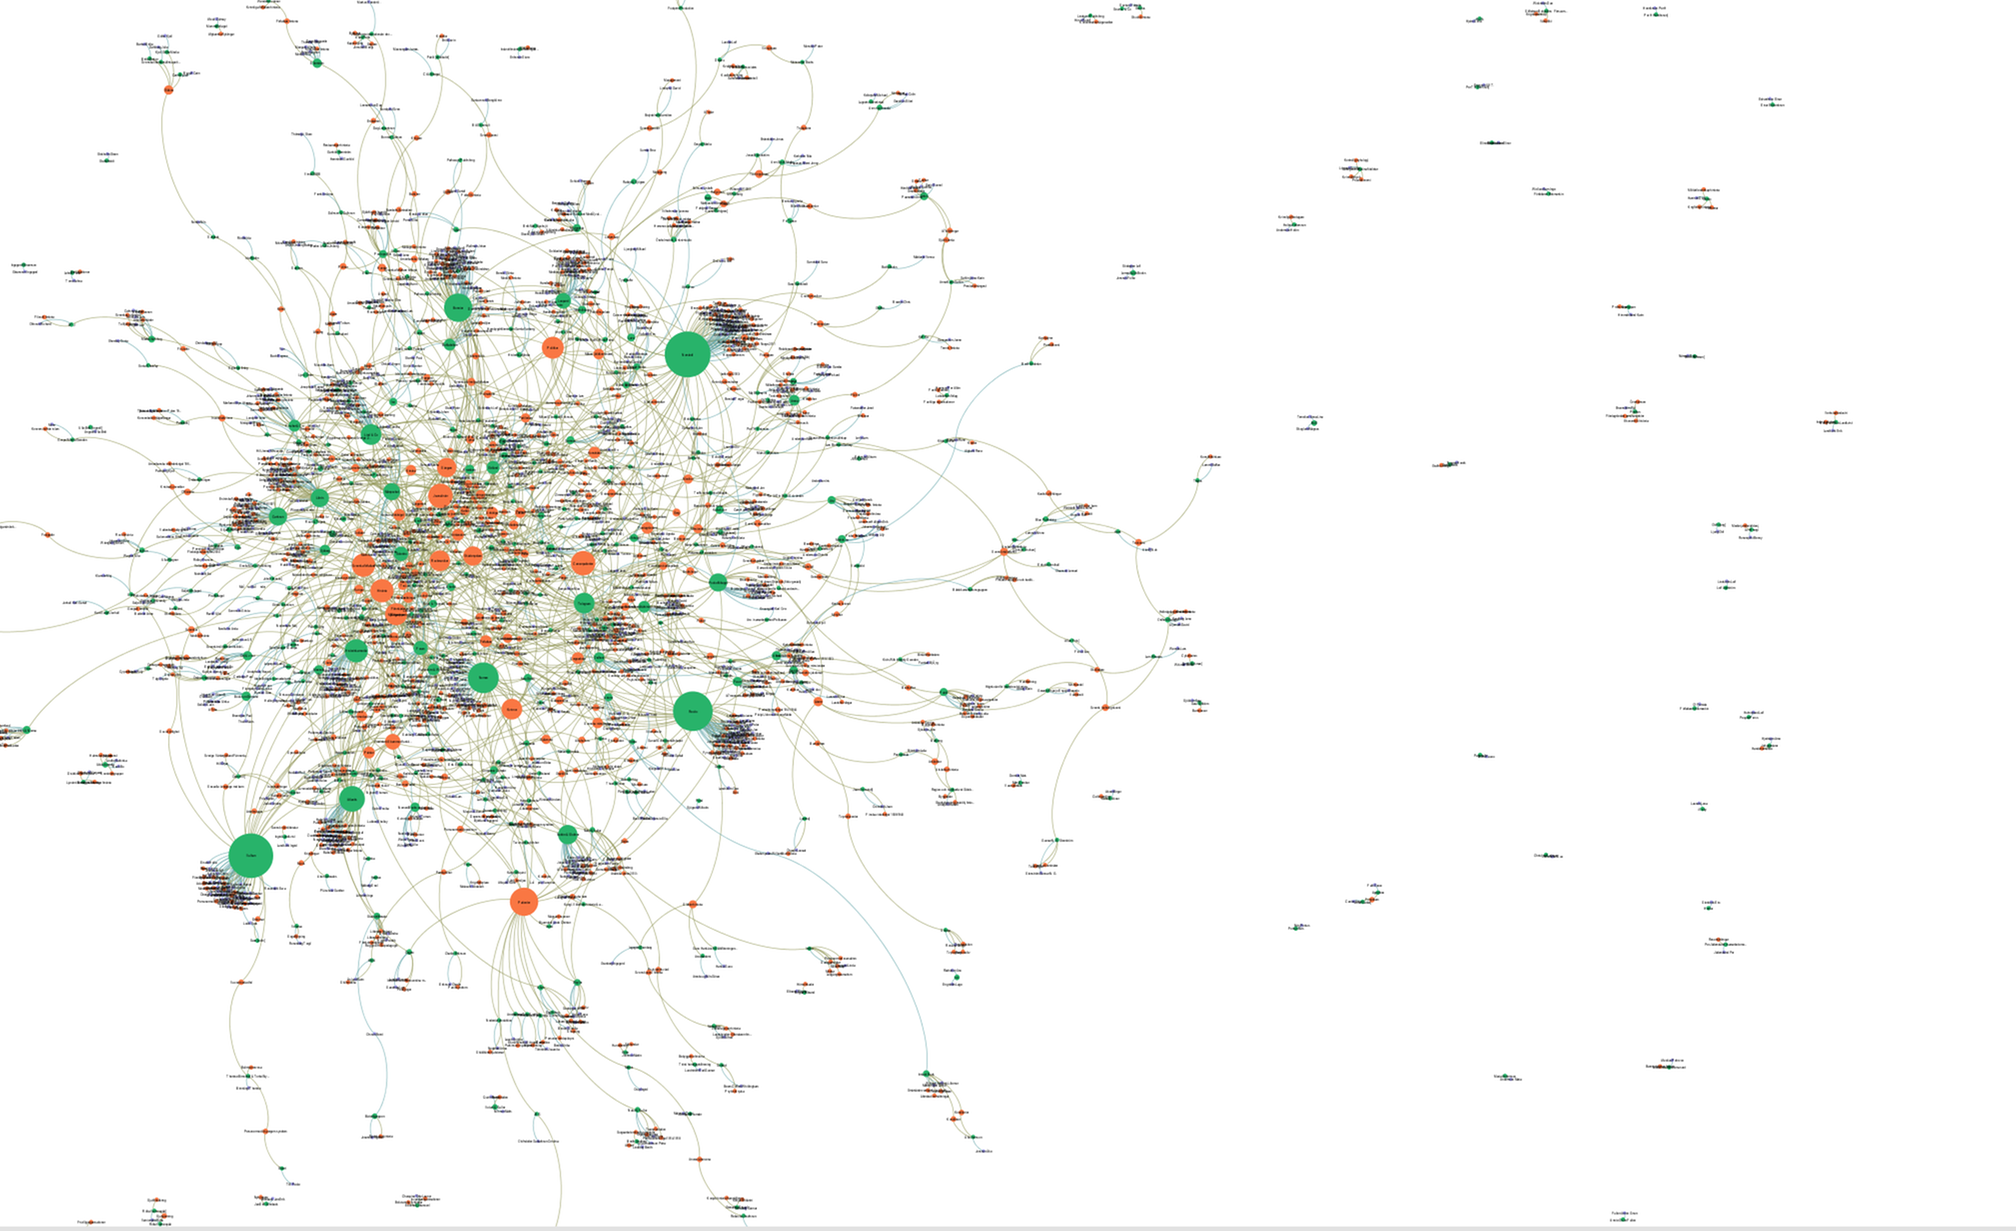 Bilden föreställer en visualisering i form av nätverksanalys utifrån metadata över förlag och ämne från biografier katalogiserade i Libris.